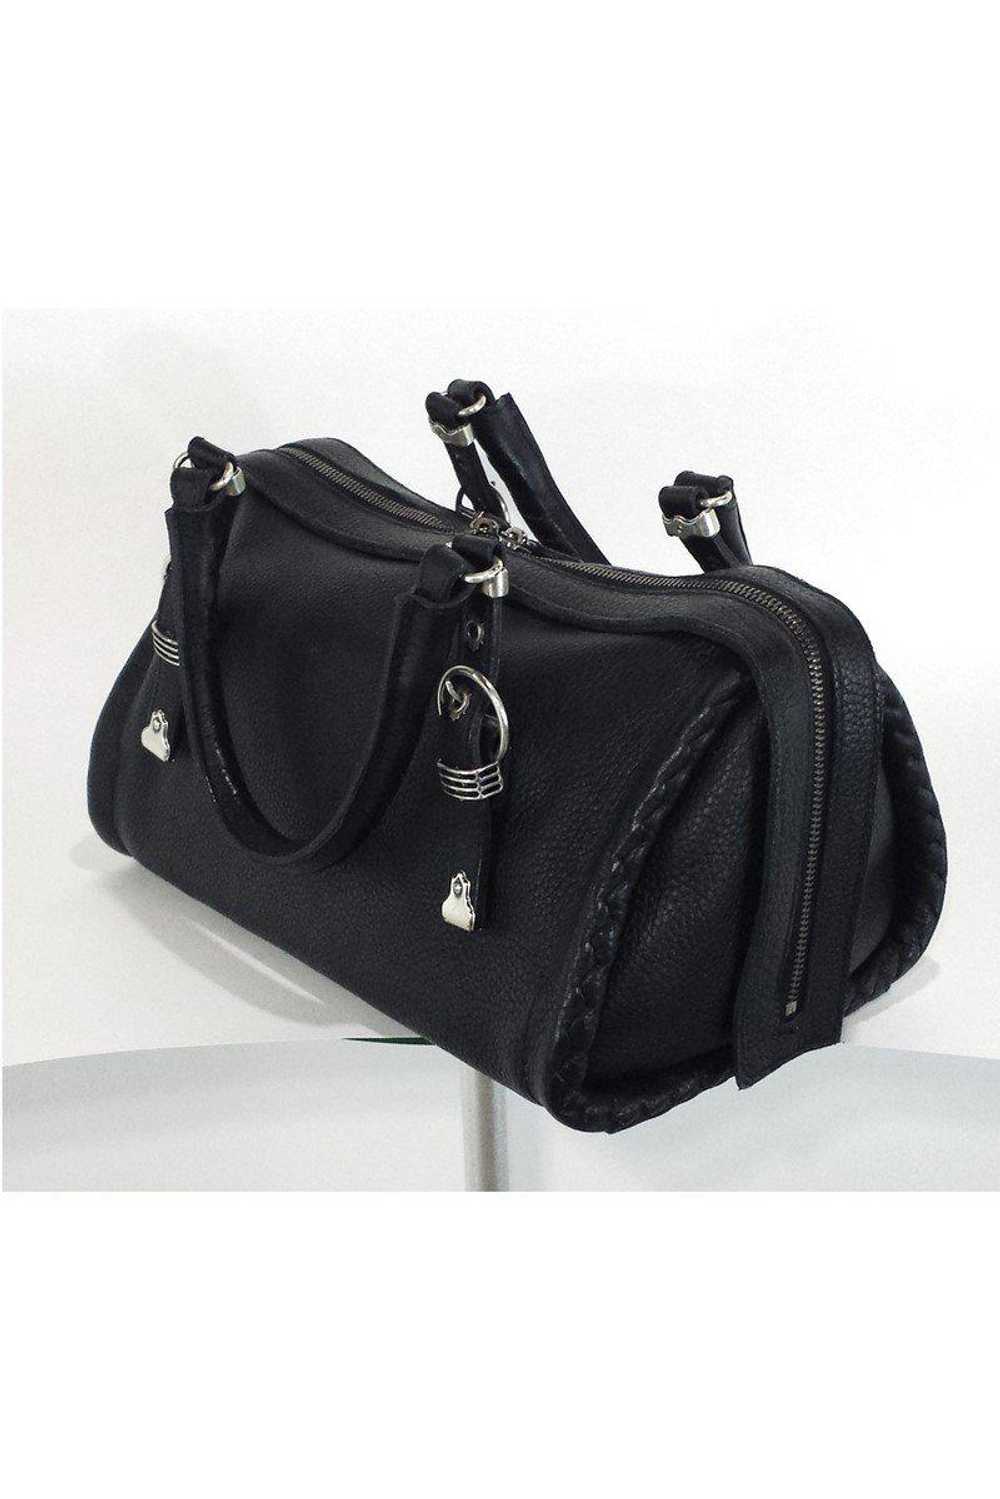 Bottega Veneta - Black Pebbled Leather Handbag - image 2